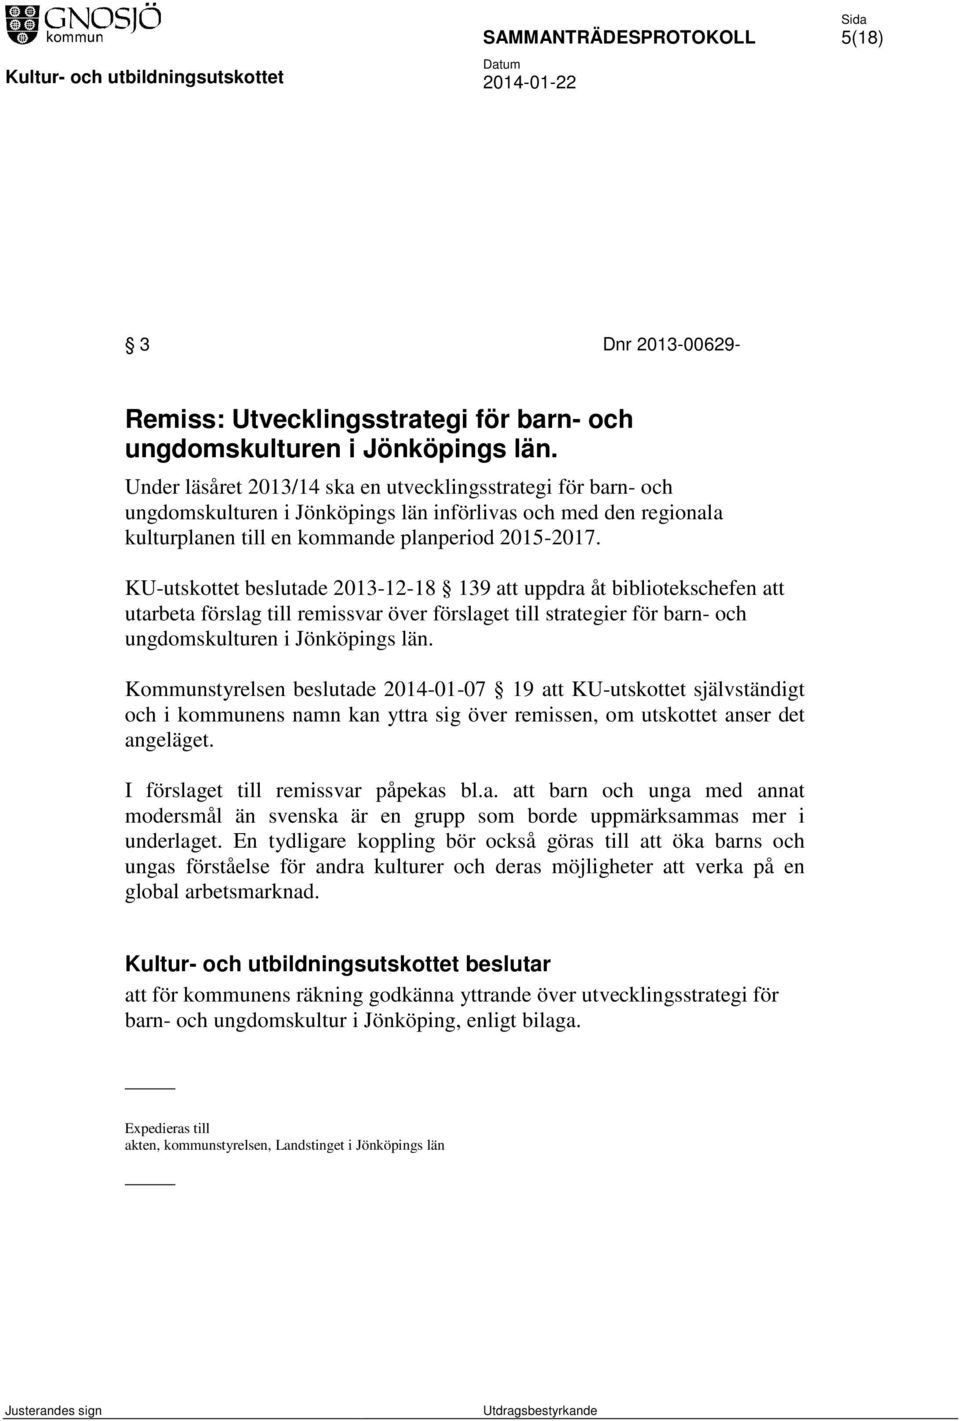 KU-utskottet beslutade 2013-12-18 139 att uppdra åt bibliotekschefen att utarbeta förslag till remissvar över förslaget till strategier för barn- och ungdomskulturen i Jönköpings län.